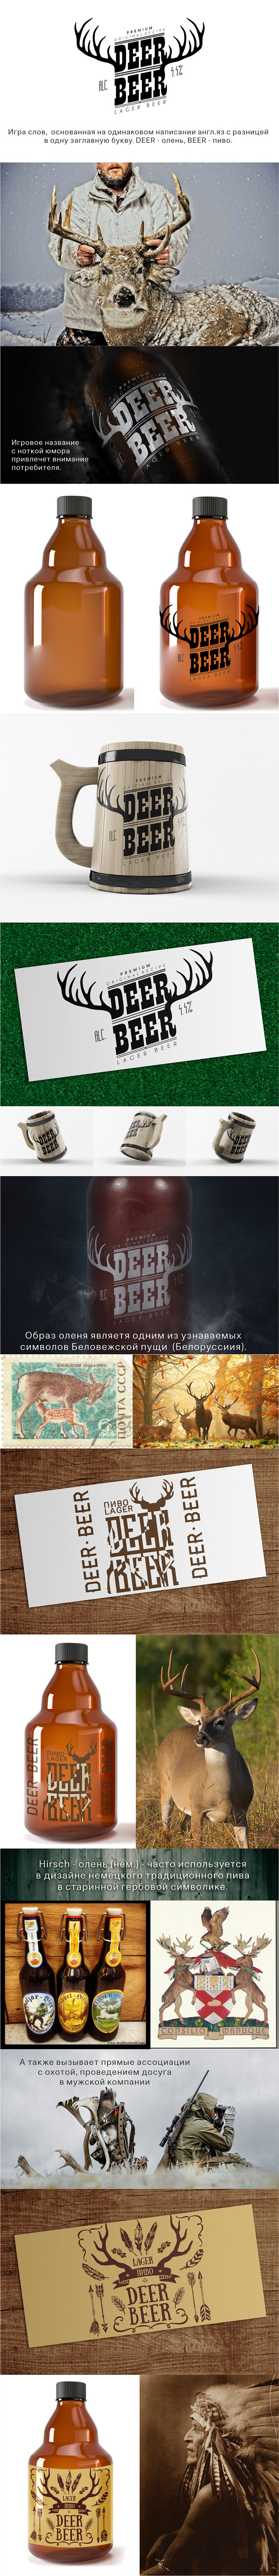 Deer beer